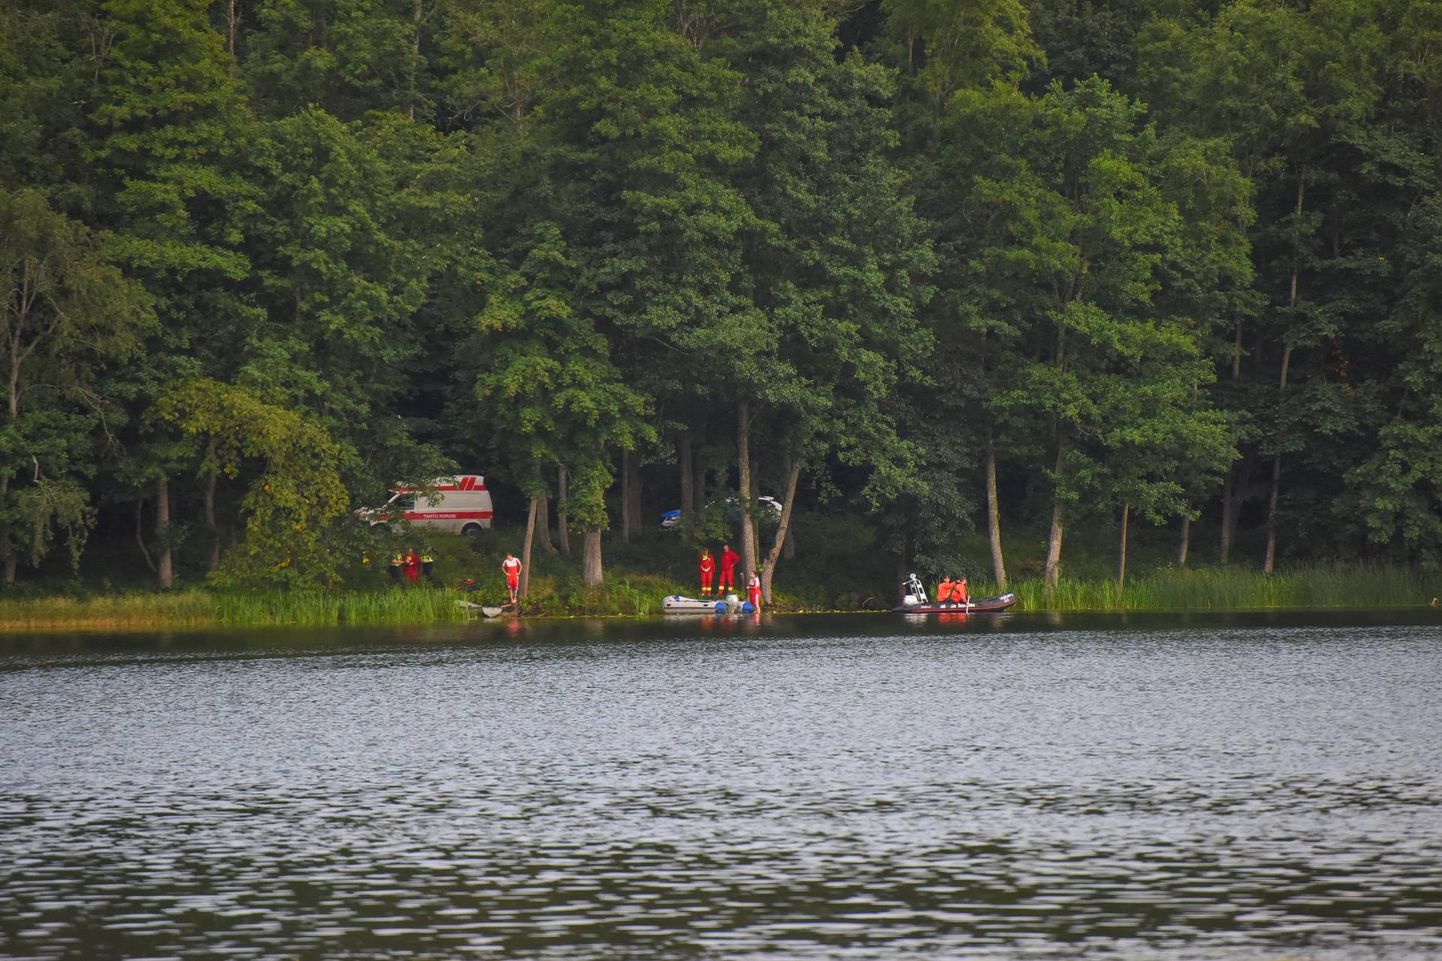 Pühapäeva õhtul otsisid päästjad Viljandi järve uppunud inimest. Surnukeha leiti kaldast viie meetri kauguselt.